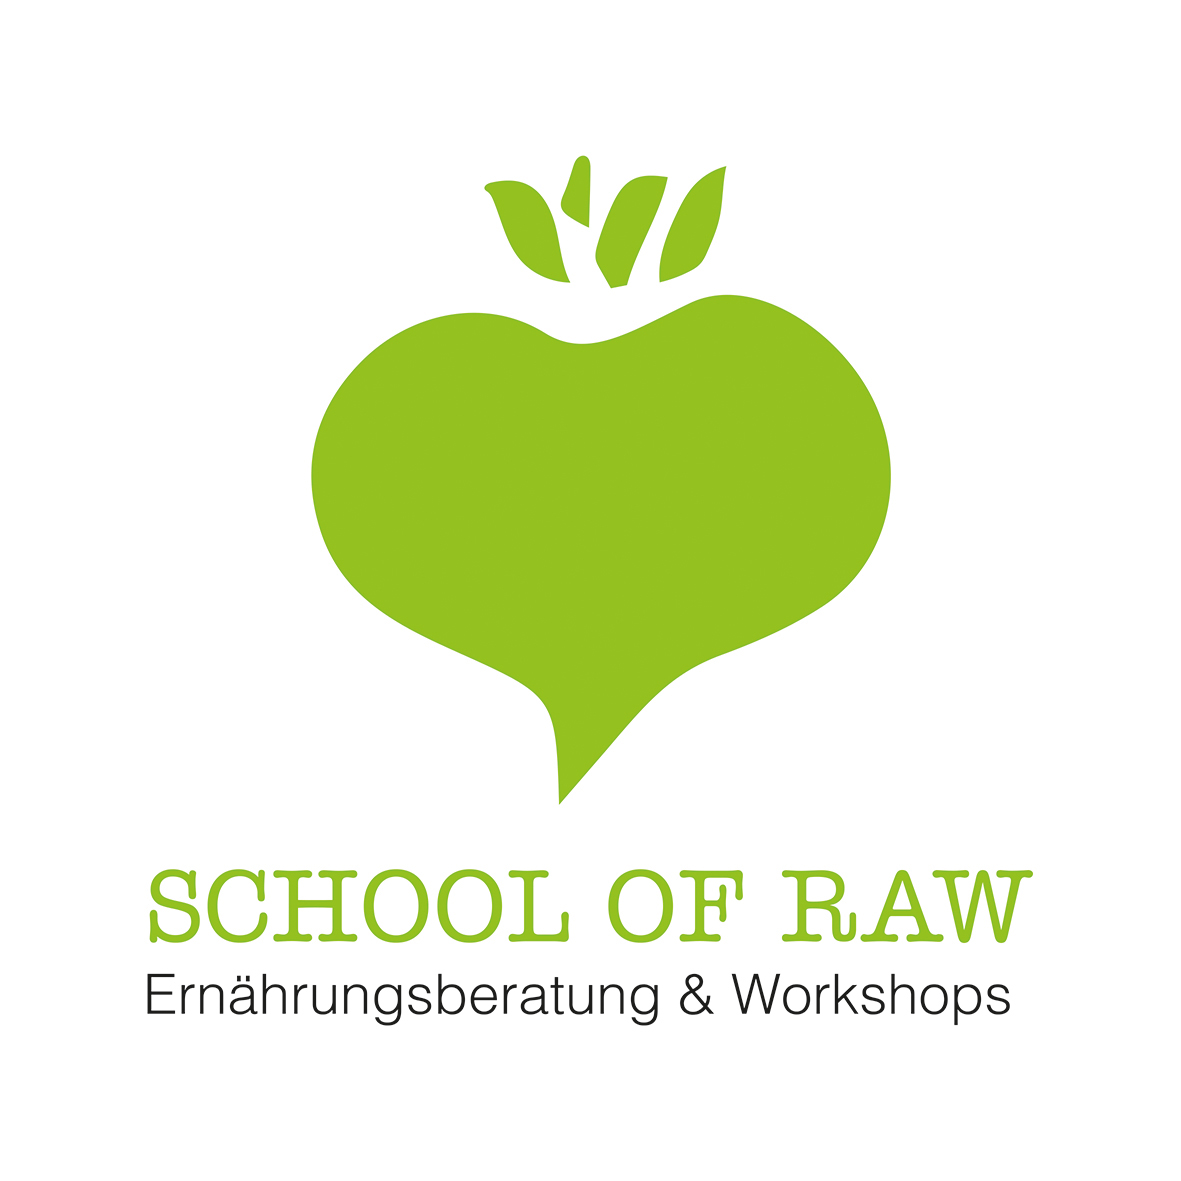 Eröffnung der School Of Raw - erste Workshops stehen fest! 42